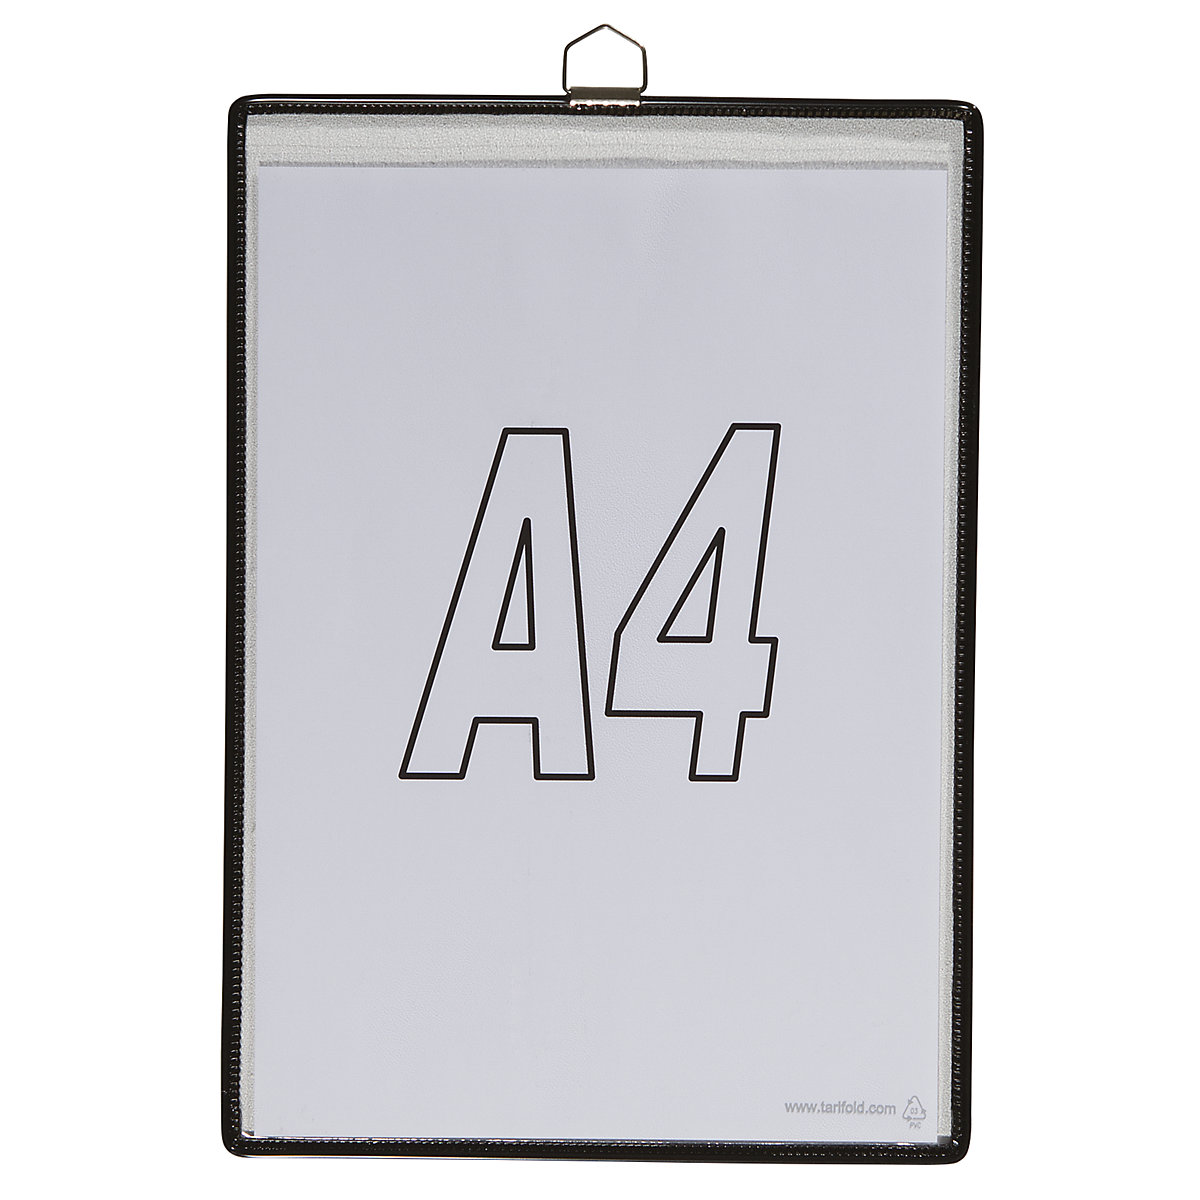 Pochette transparente à accrocher – Tarifold, pour format A4, coloris noir, lot de 10-5